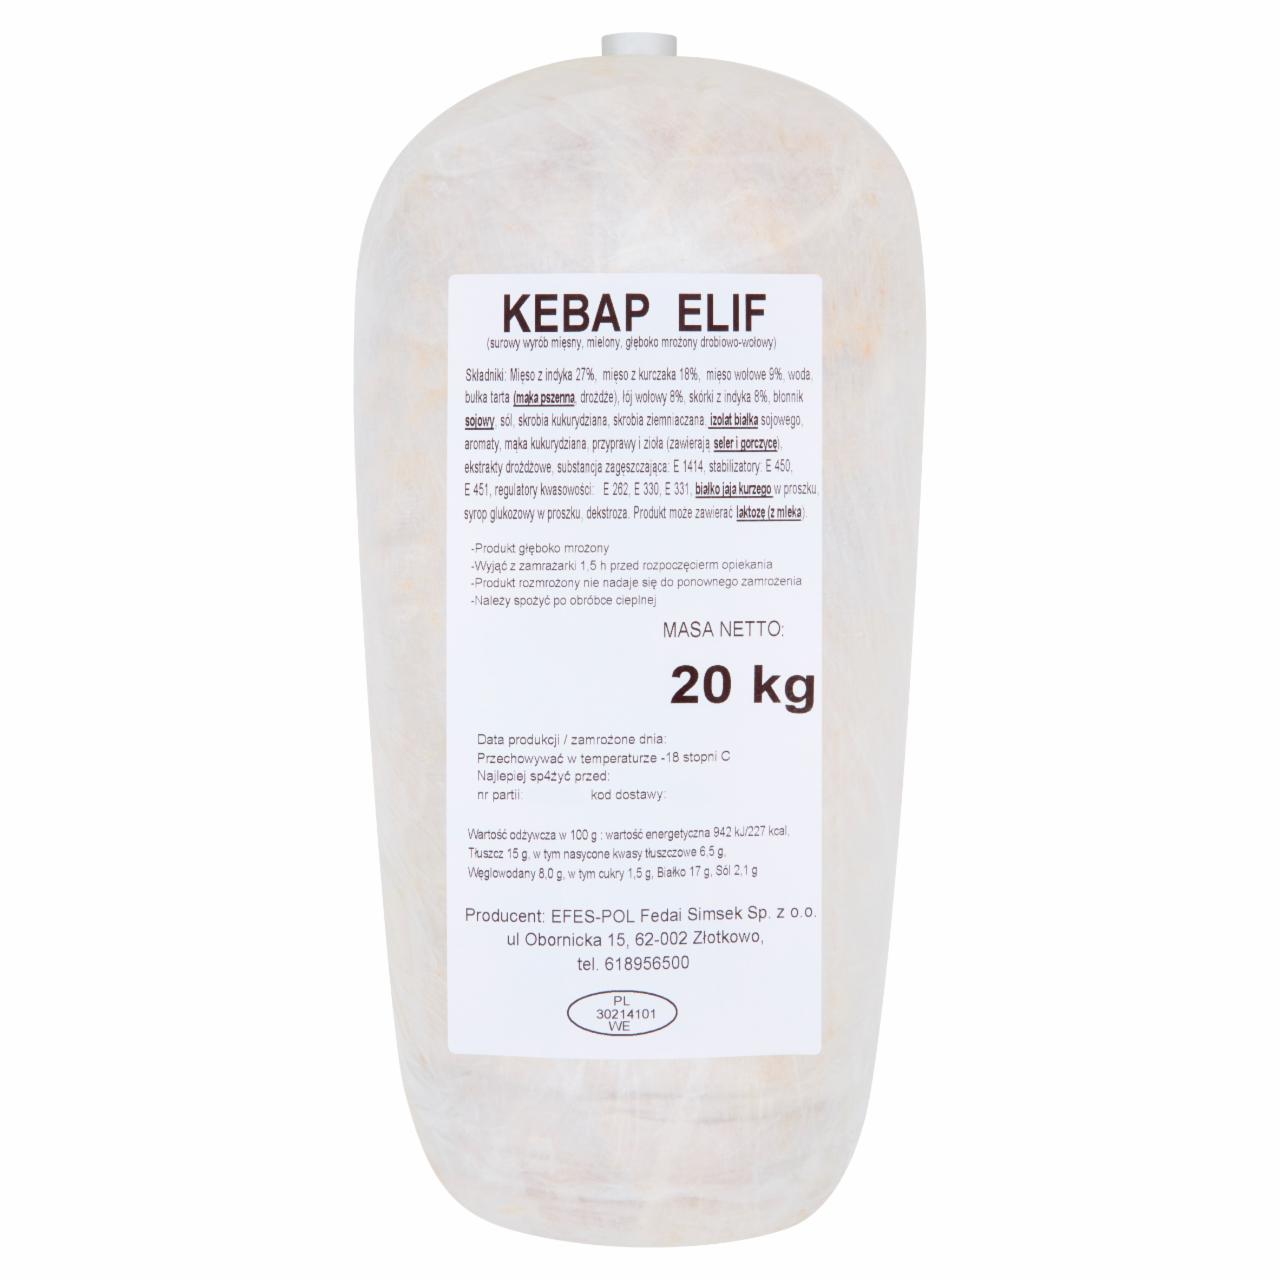 Zdjęcia - Kebap Elif drobiowo-wołowy 20 kg